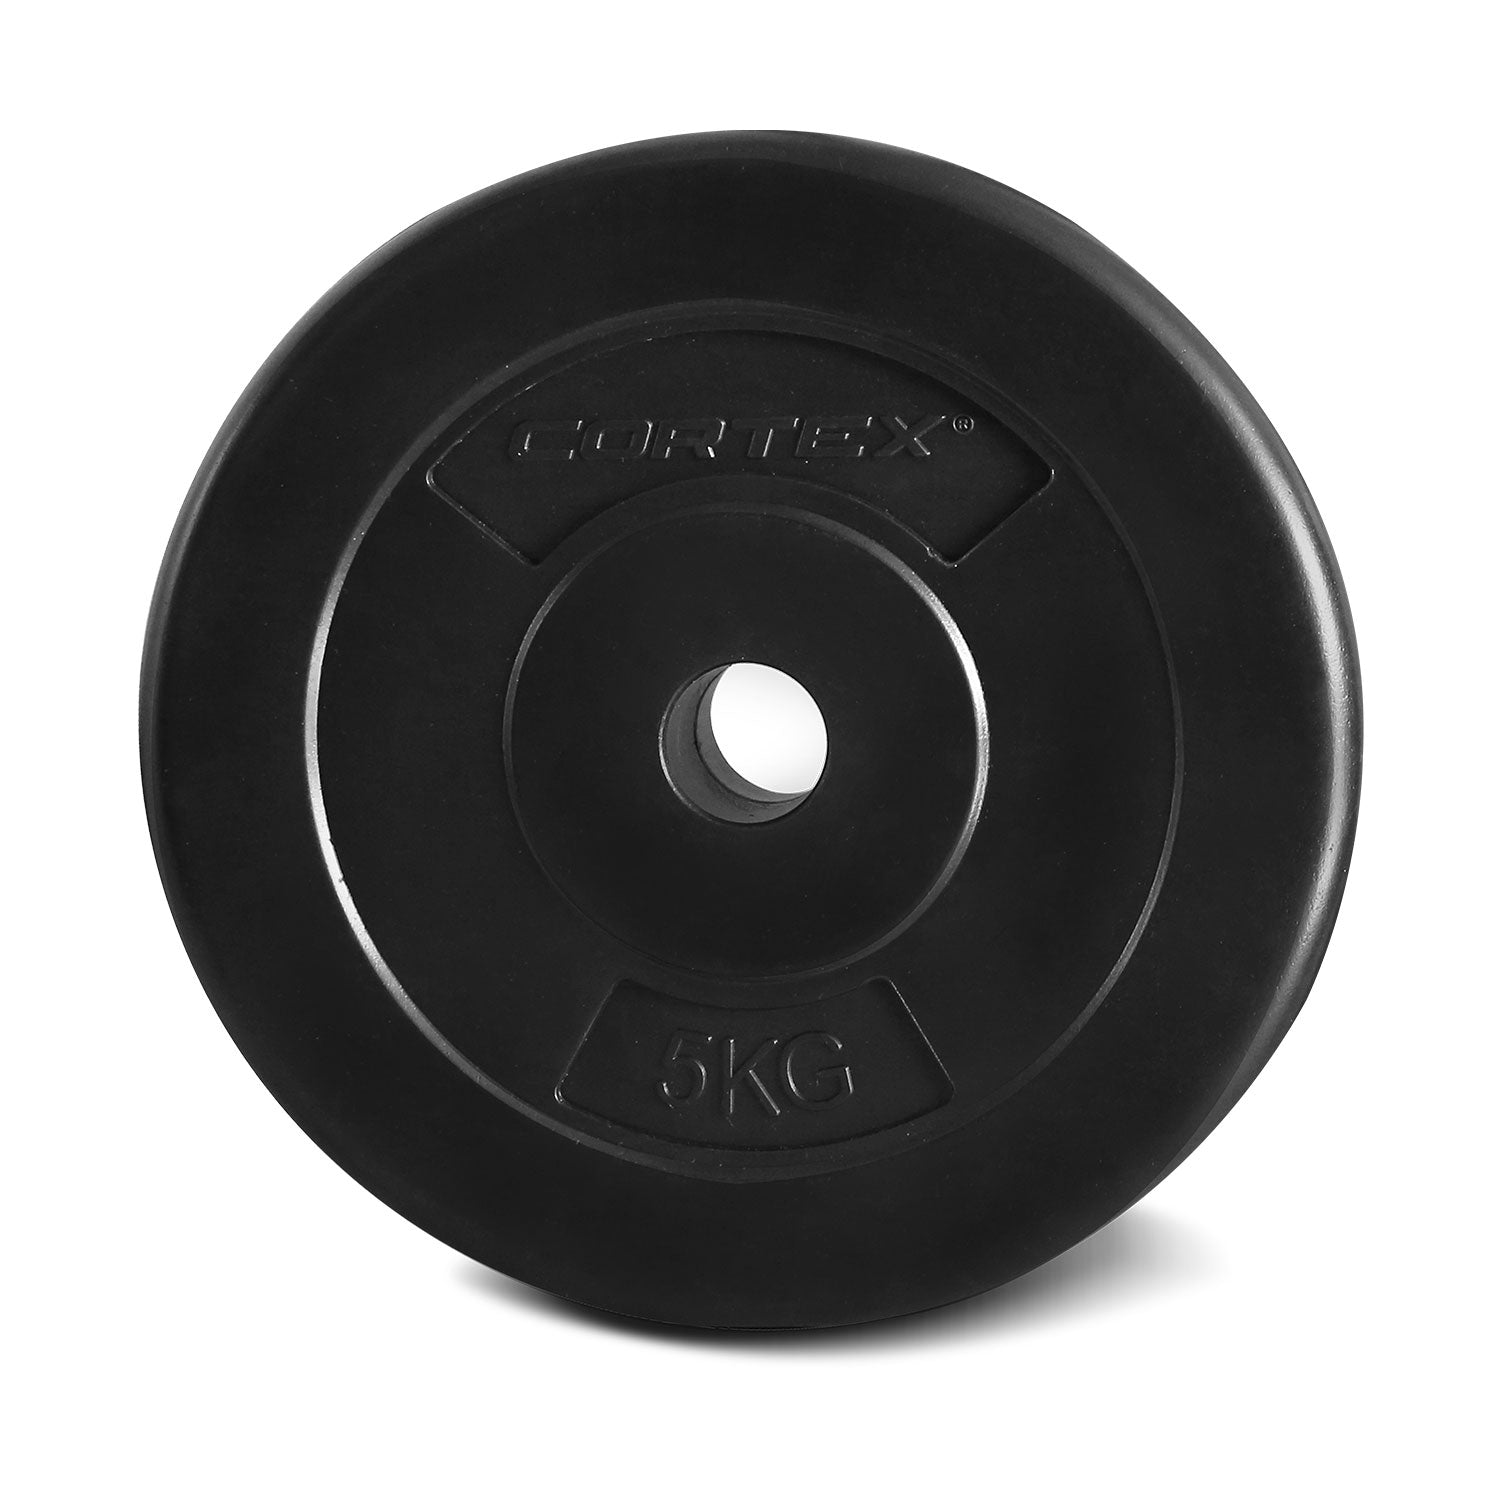 CORTEX 35kg EnduraCast Weight Plate Set